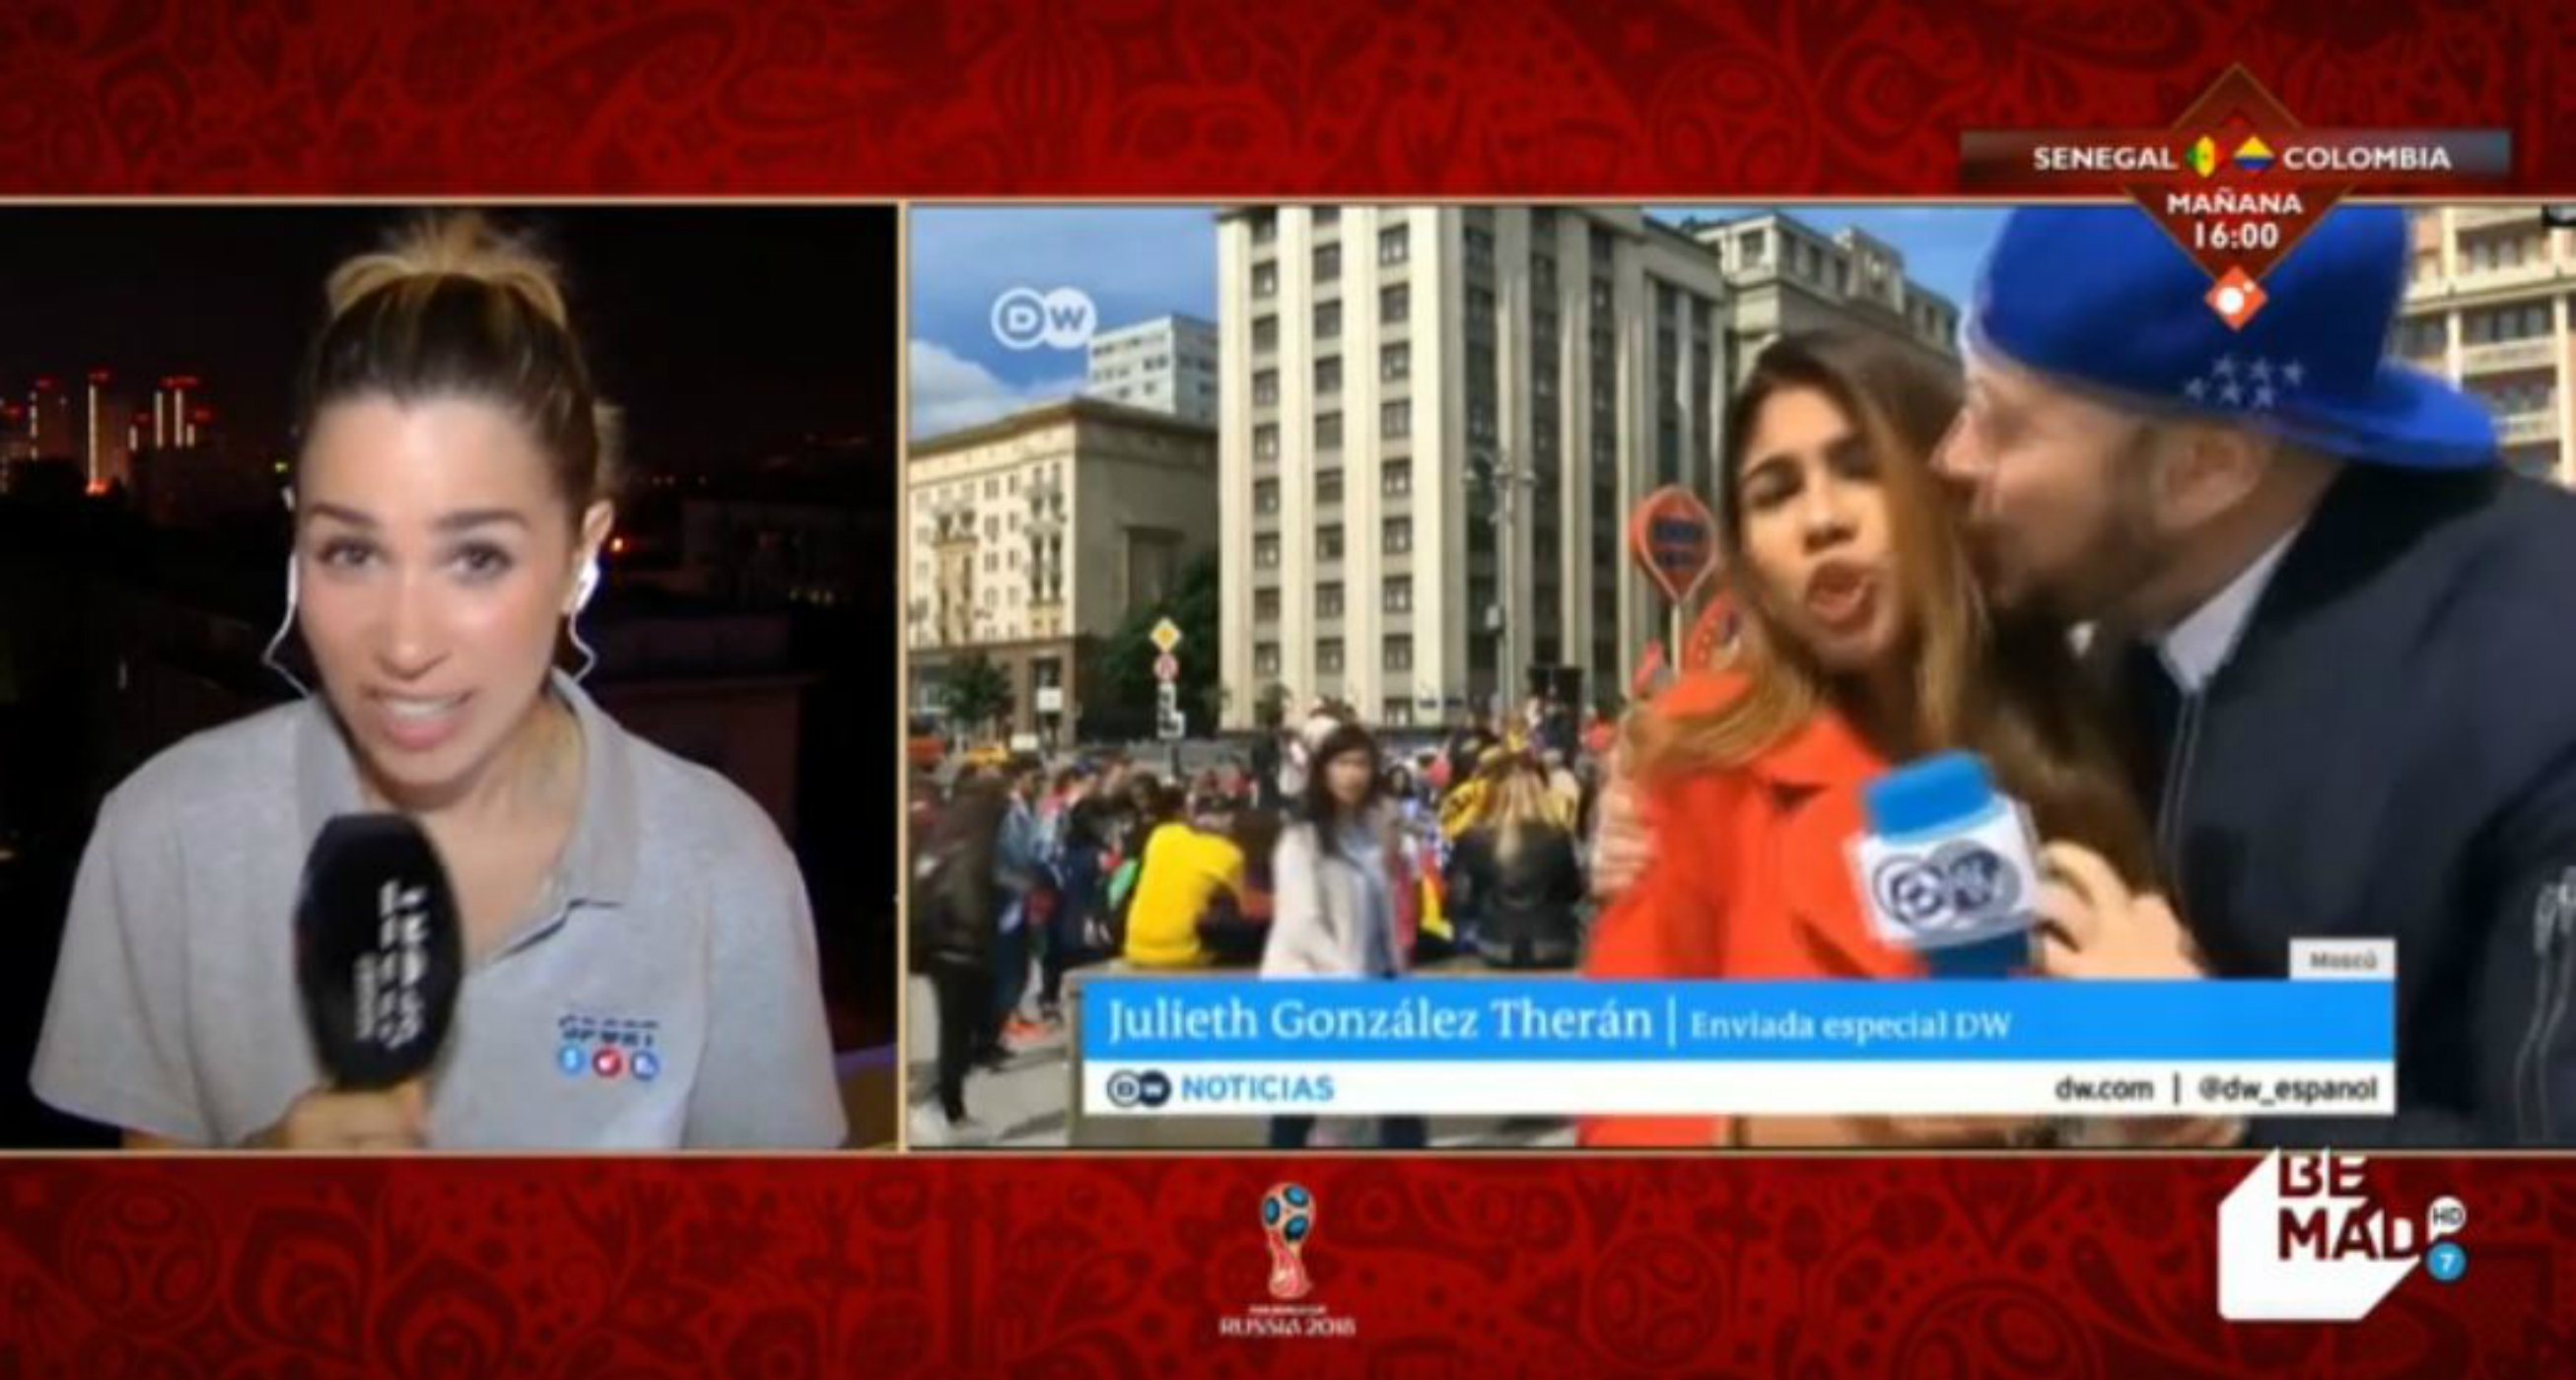 Una periodista de Telecinco estalla por el acoso en el Mundial: "¡Basta ya!"